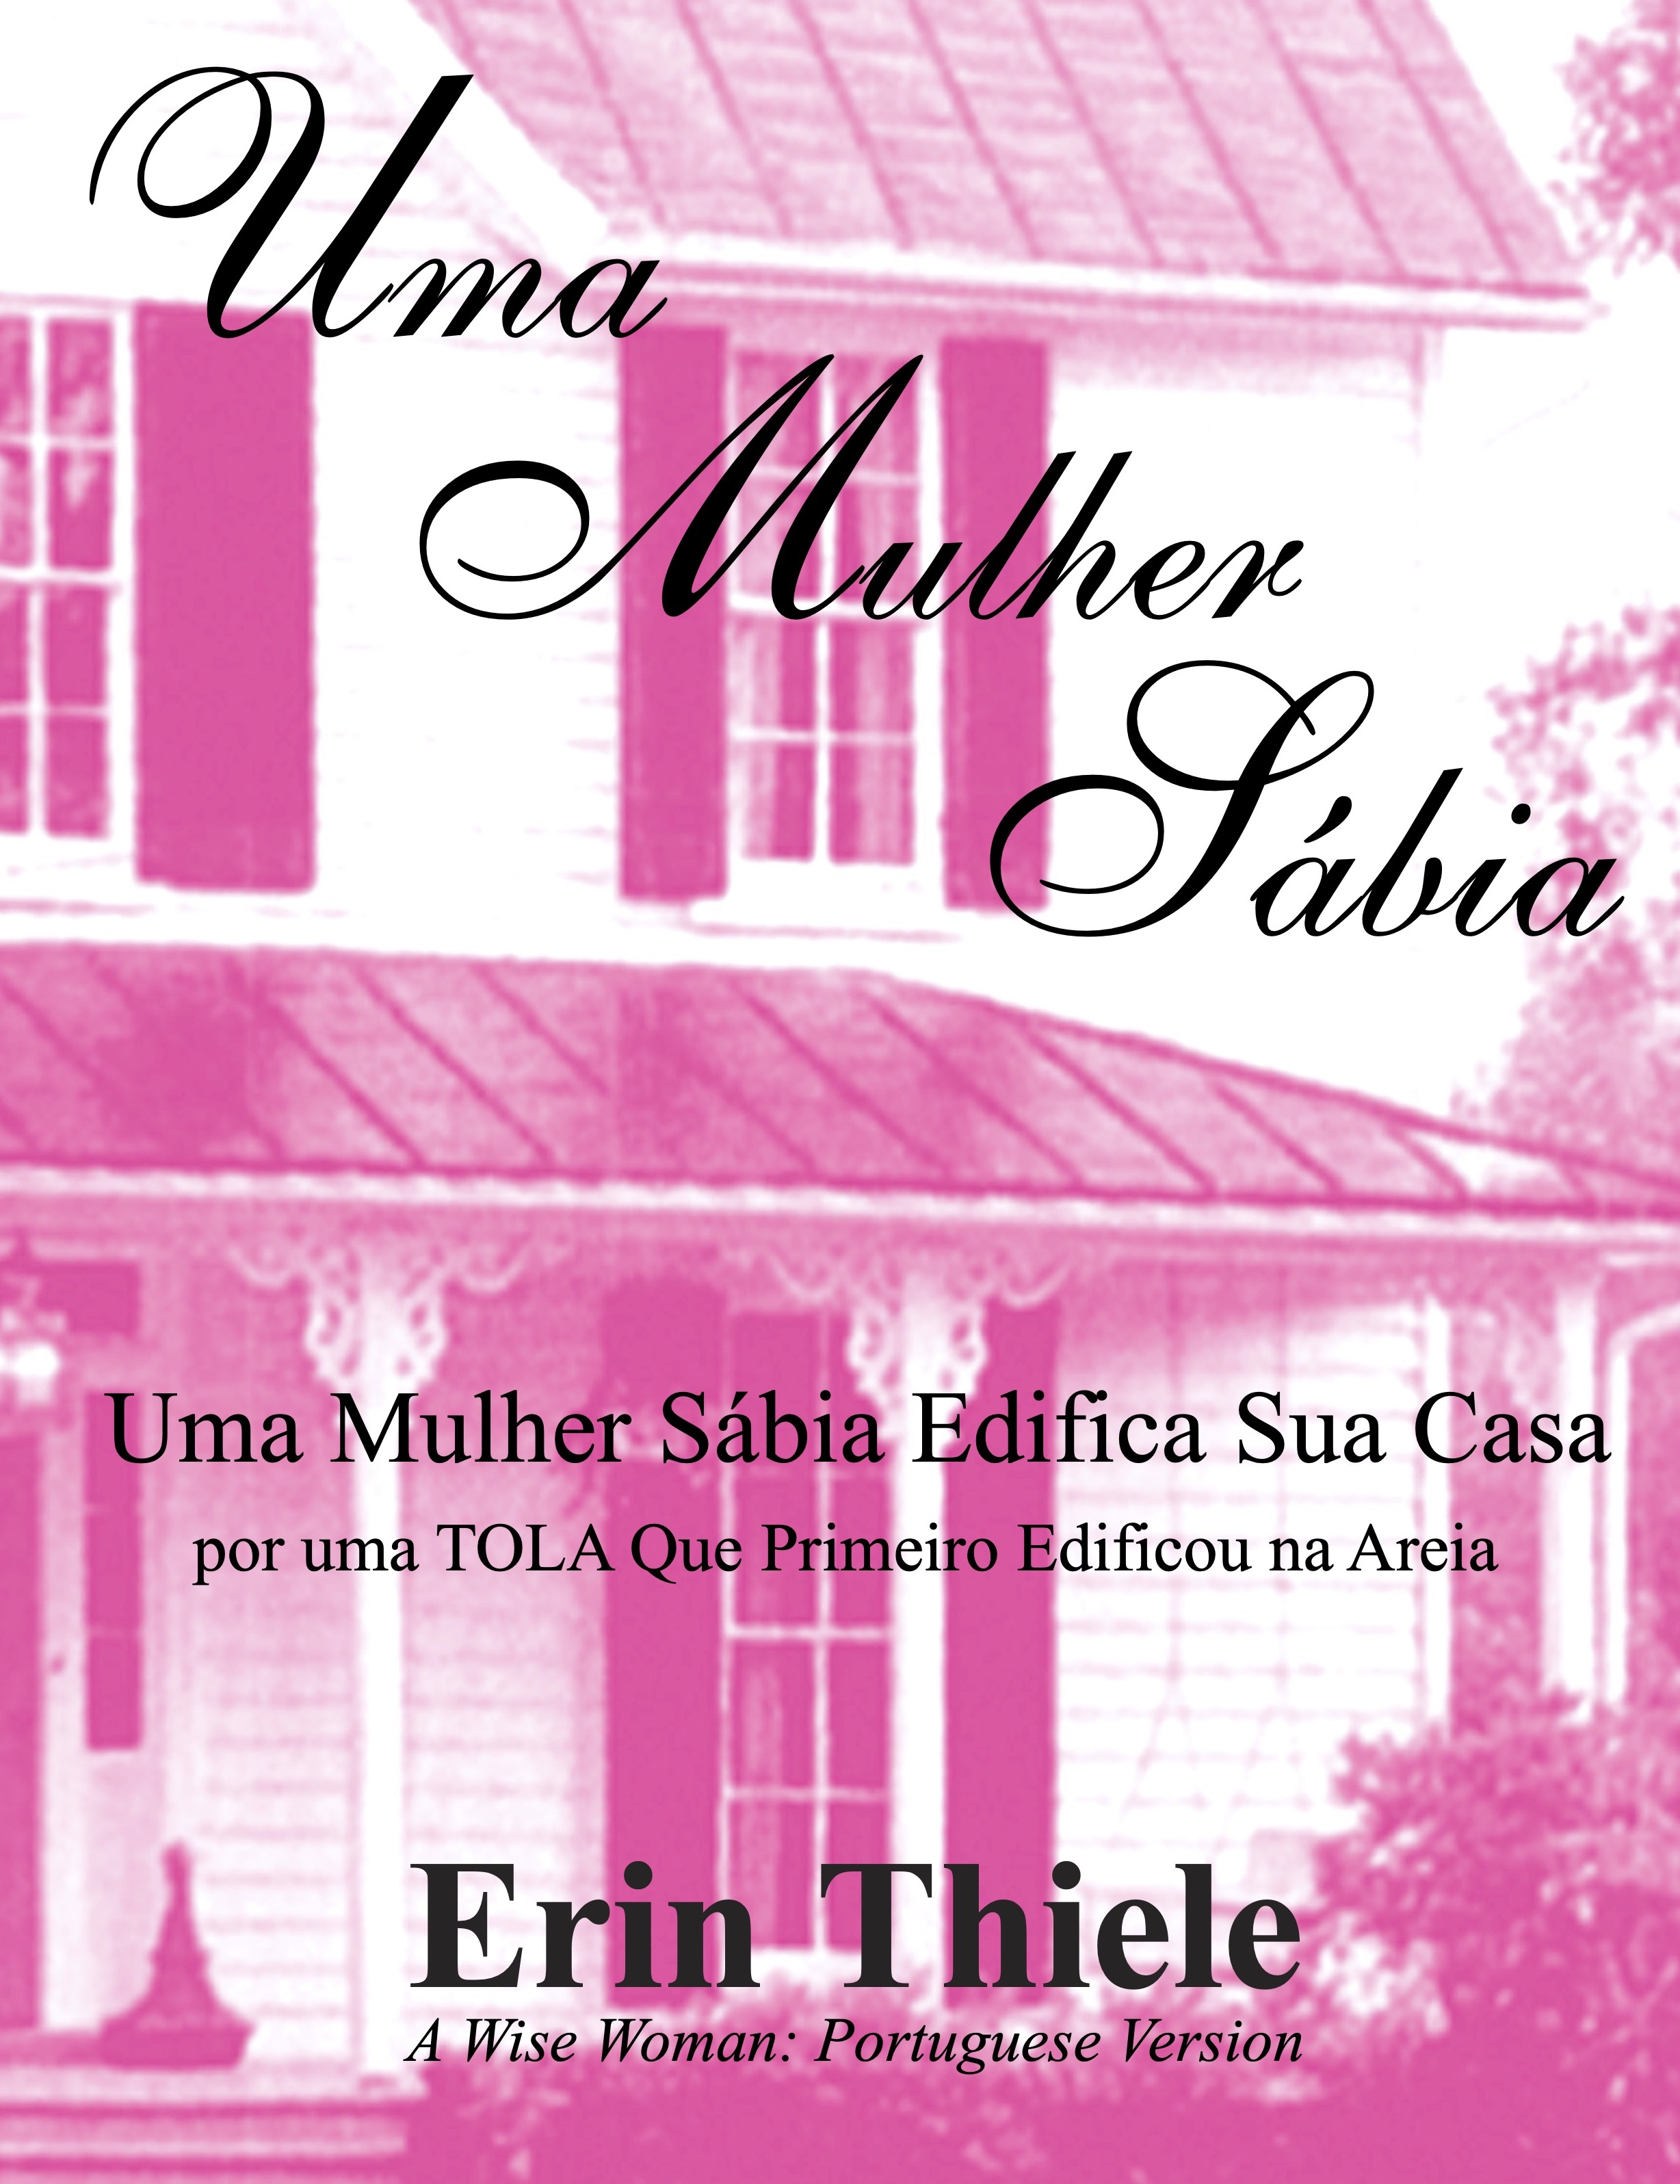 Uma Mulher Sábia: Por uma TOLA Que Primeiro Edificou na Areia (Portuguese Edition)